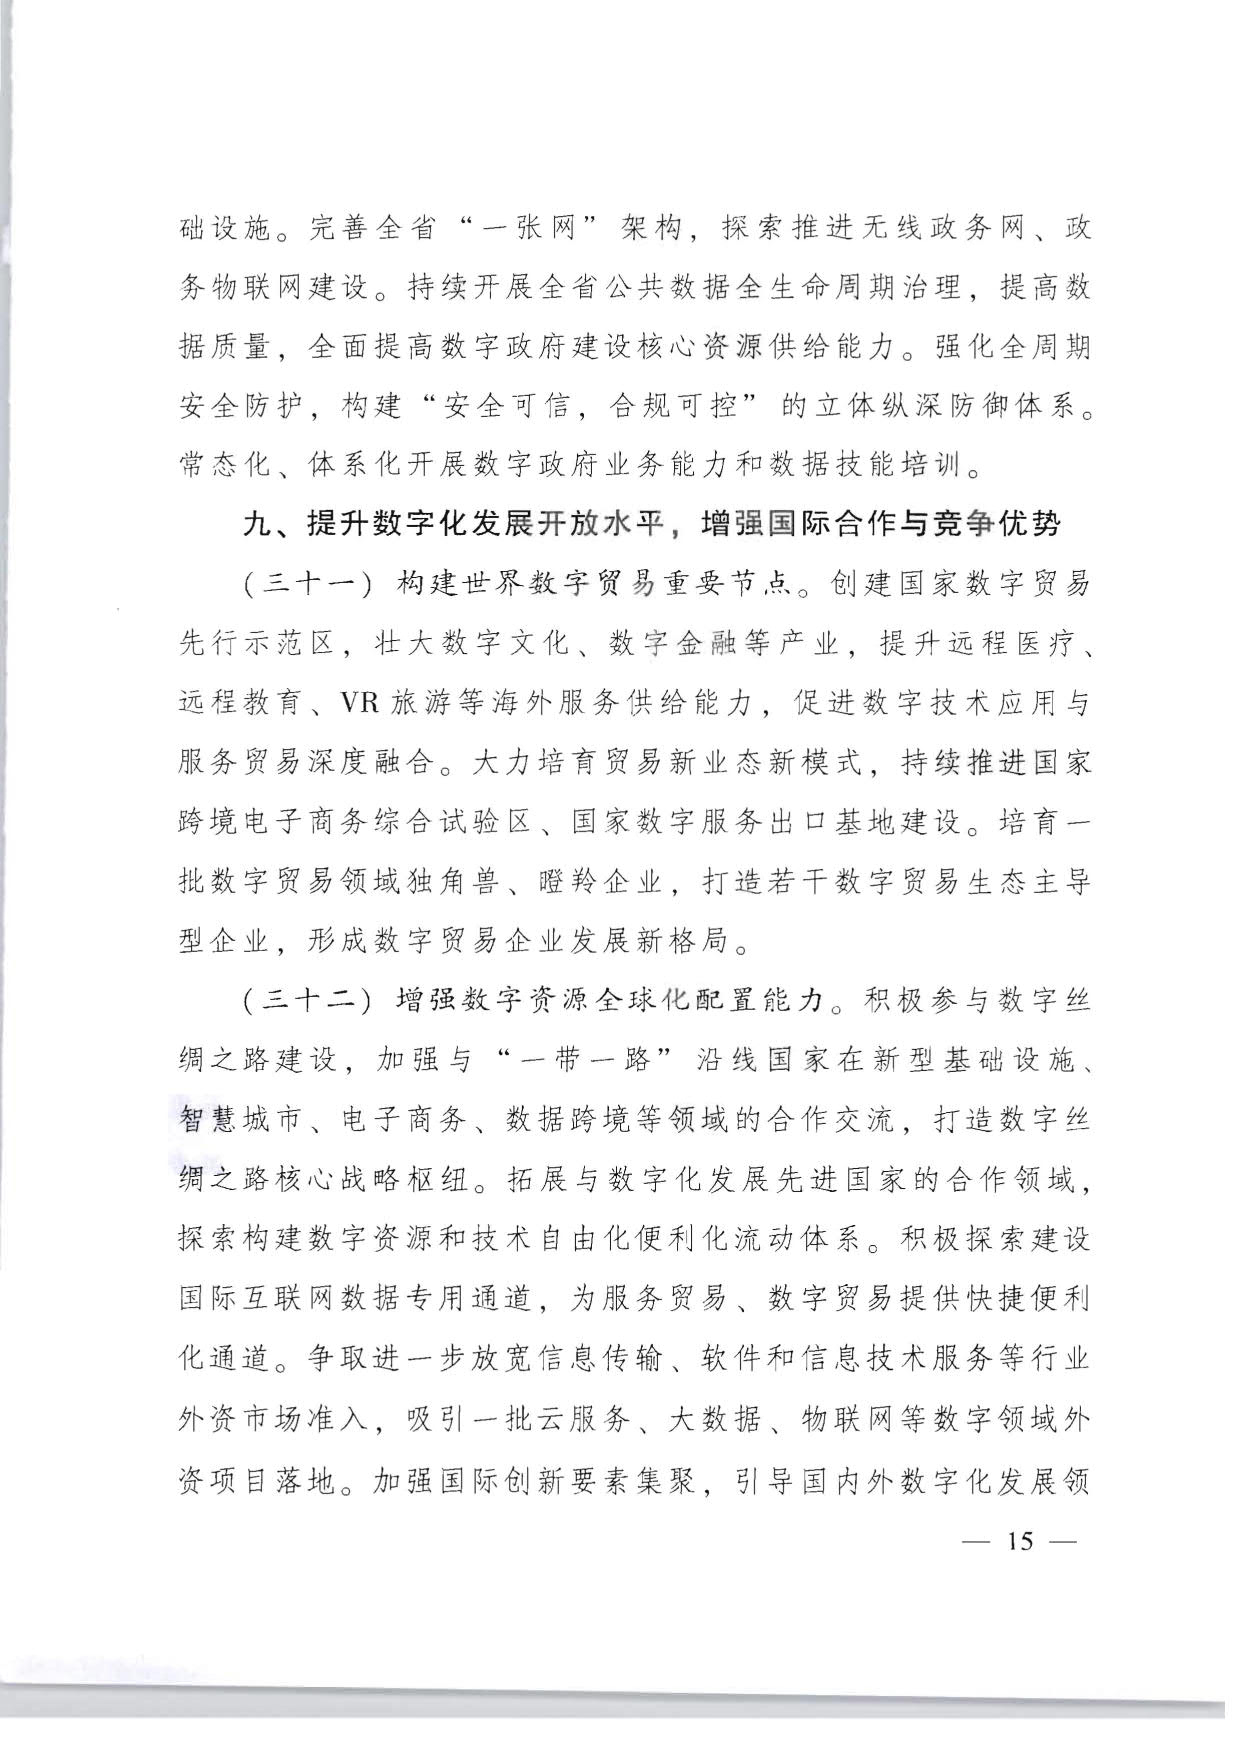 广东省人民政府关于加快数字化发展的意见_15.jpg